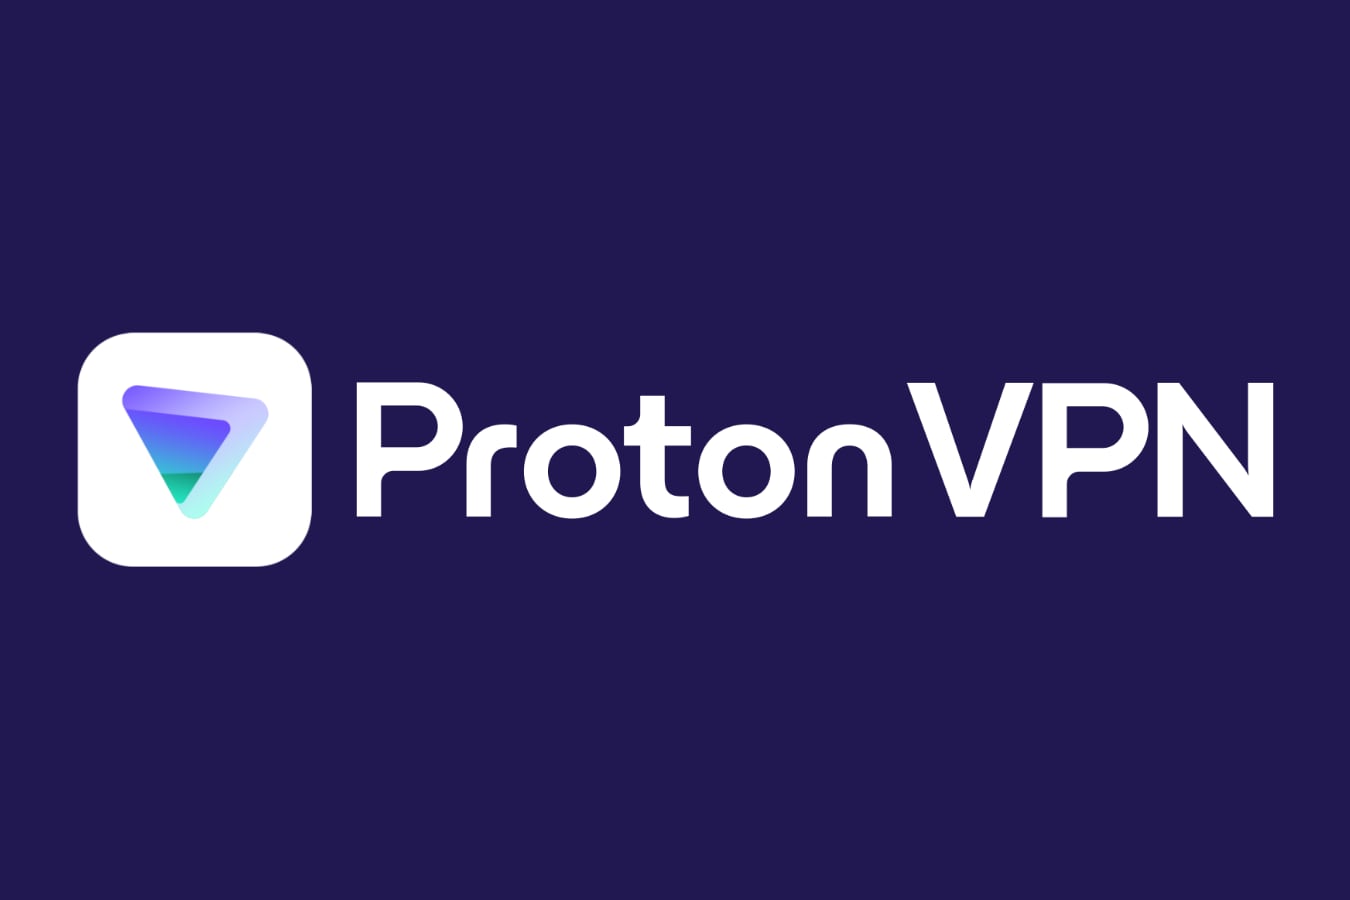 Роскомнадзор объявил об ограничении работы VPN-сервисов в России, в том числе Proton VPN